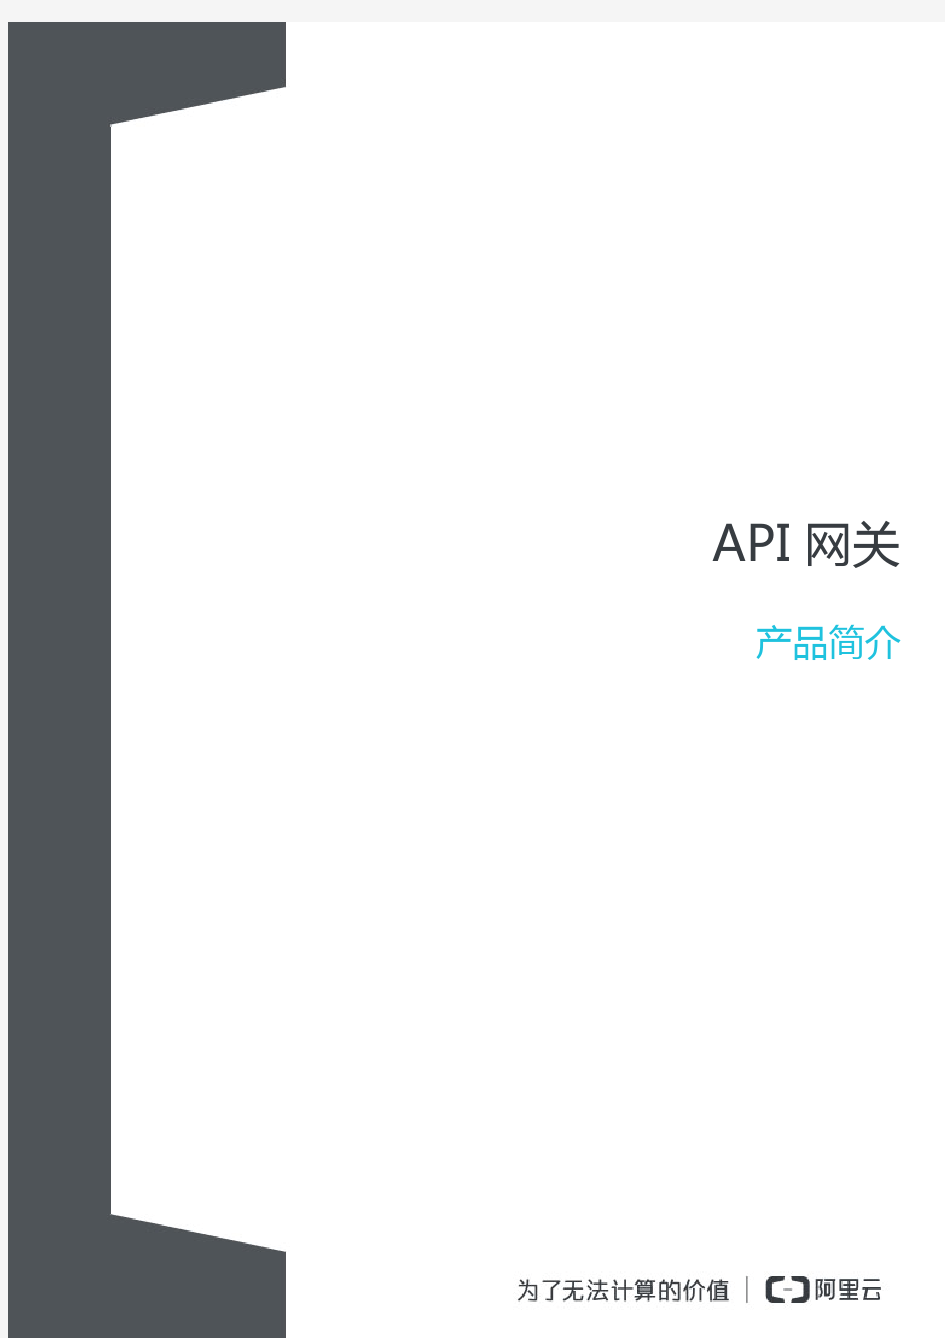 API网关简介